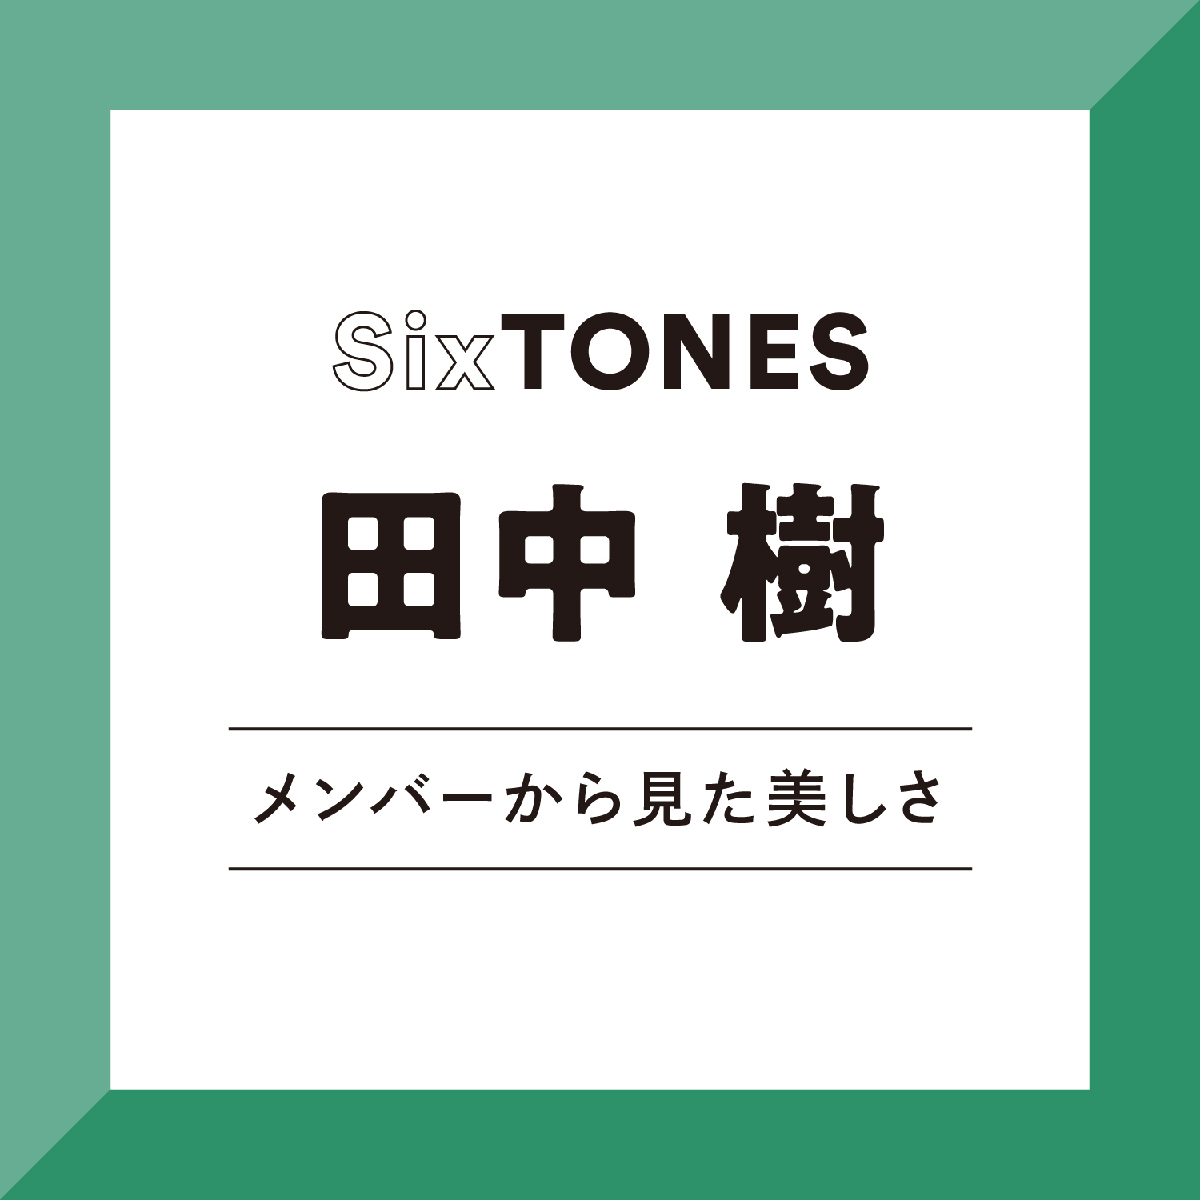 【SixTONES】京本大我から見た田中樹は「はかない美しさとは真逆かも（笑）。でも腹をくくって力強く立っている姿は美しいと思う」